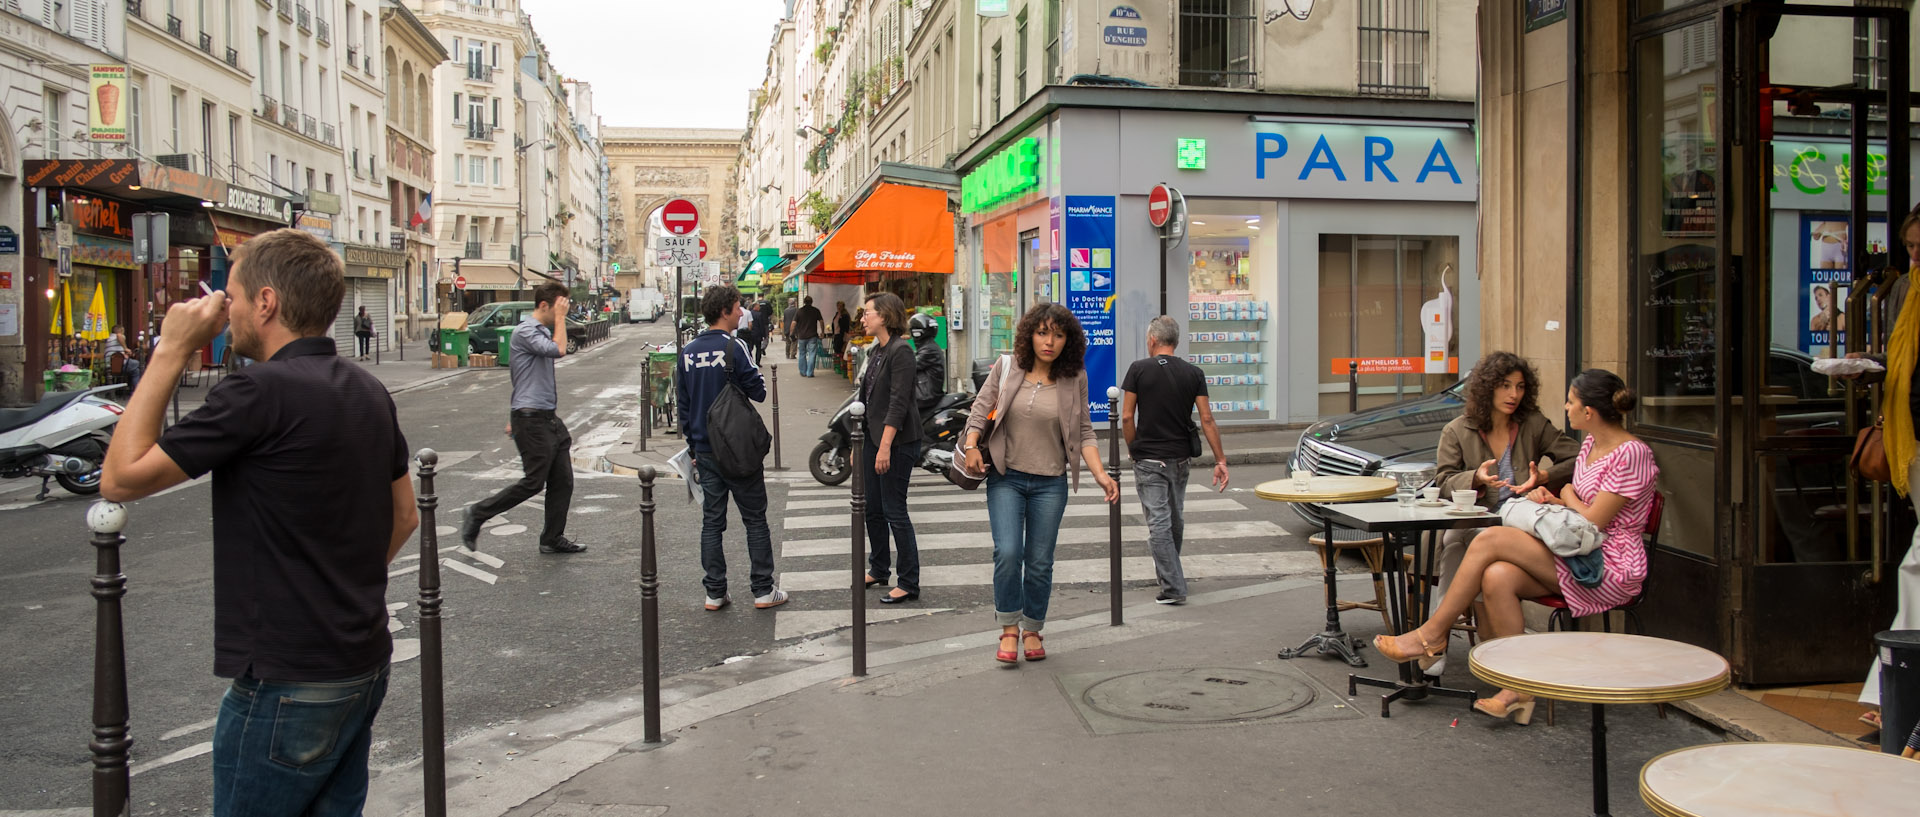 Passants à un carrefour, rue du faubourg Saint-Denis, à Paris.